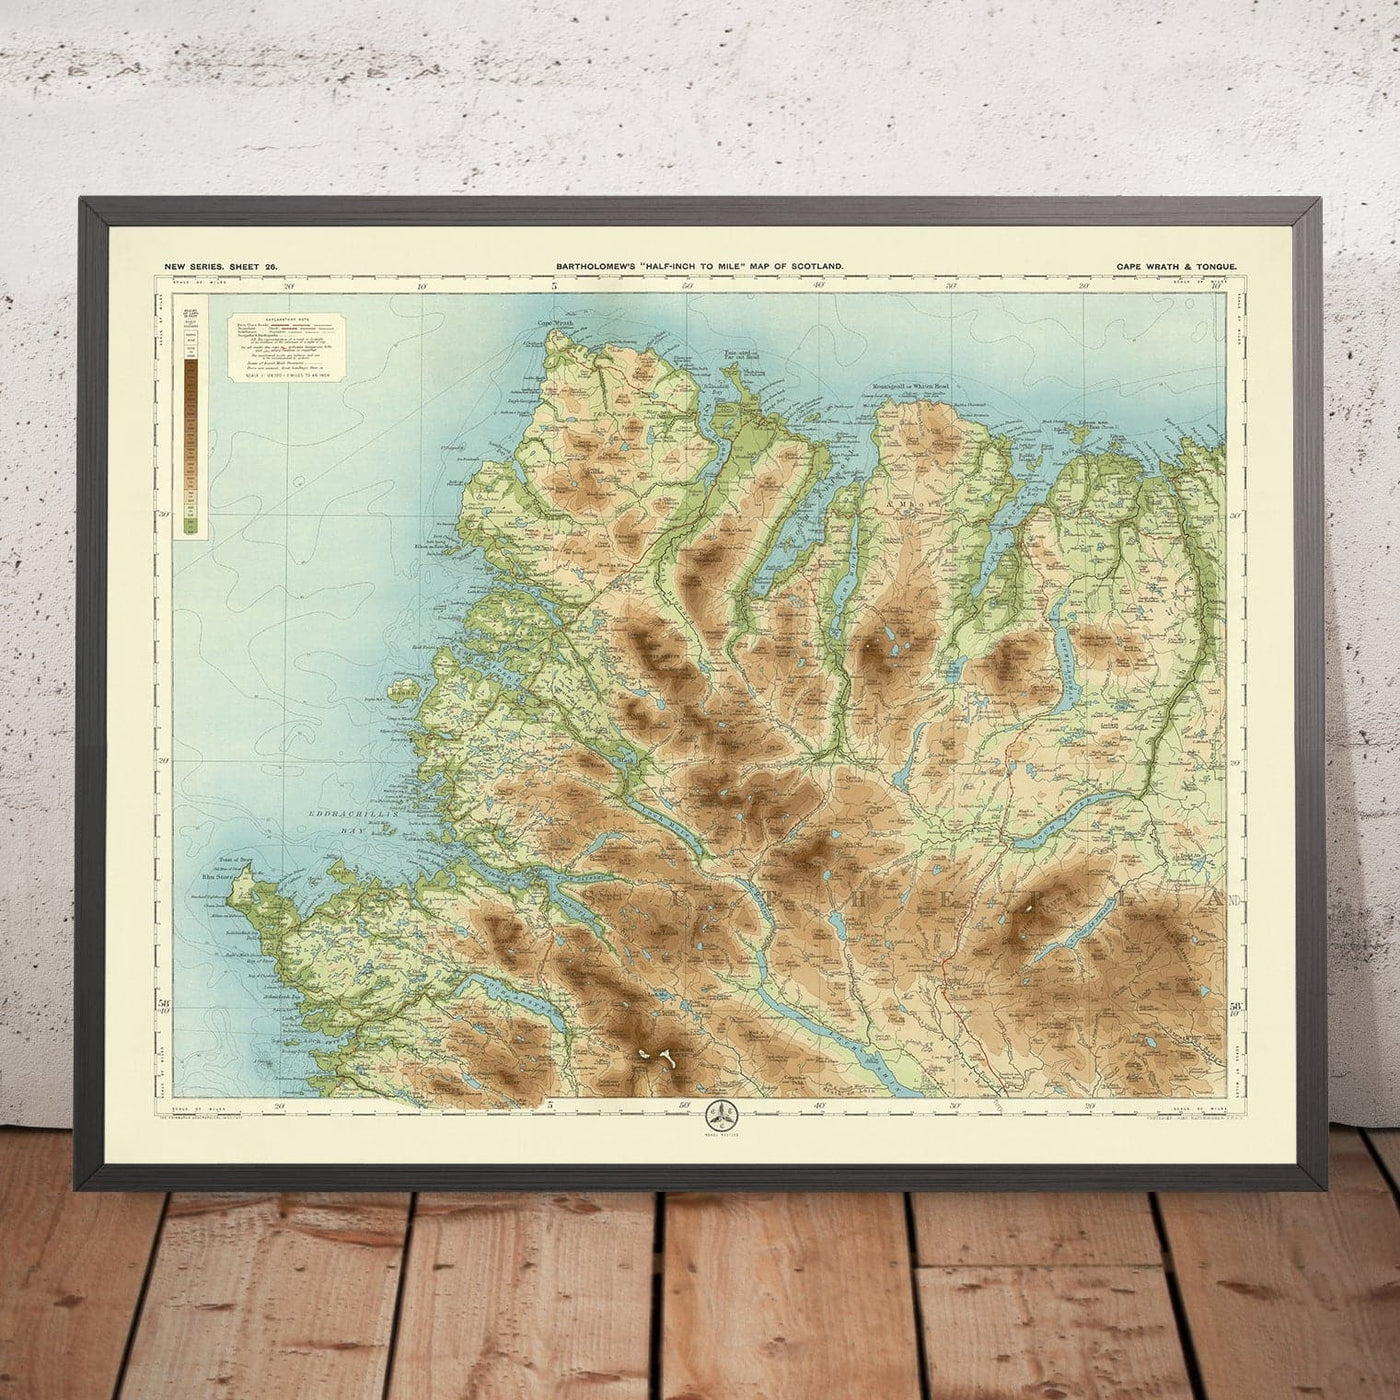 Alte OS-Karte von Cape Wrath & Tongue, Sutherland von Bartholomew, 1901: Ben Hope, Loch Eriboll, Durness, Tongue, Kyle of Durness, Ben Loyal